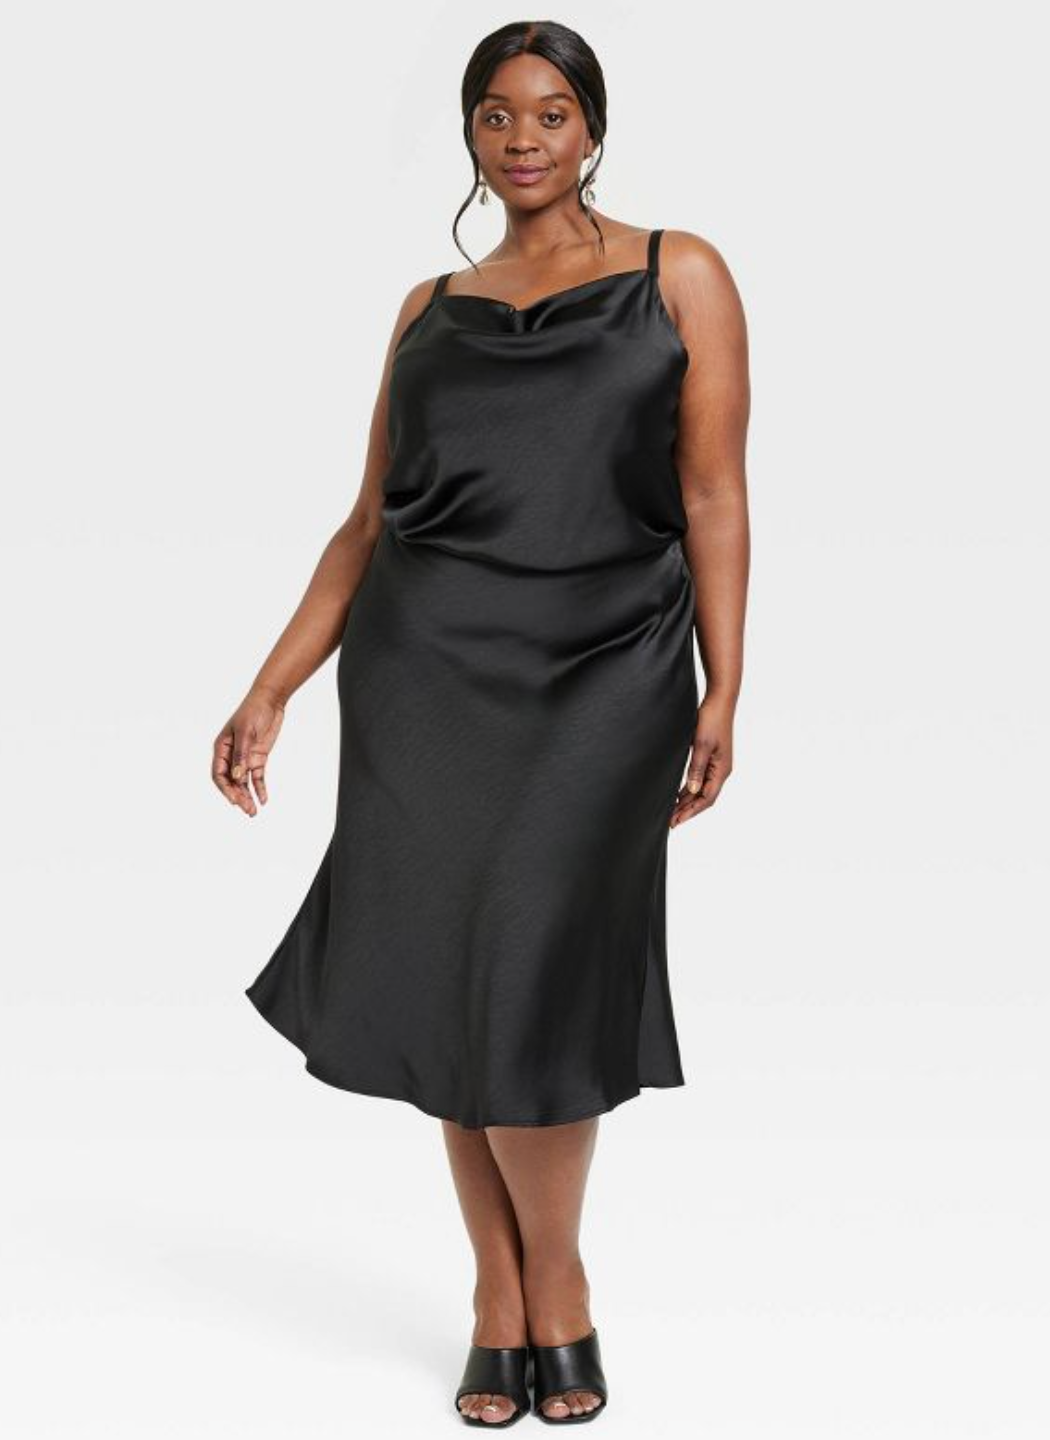 City Chic | Women's Plus Size Sequin Party Dress - Black - 22w : Target